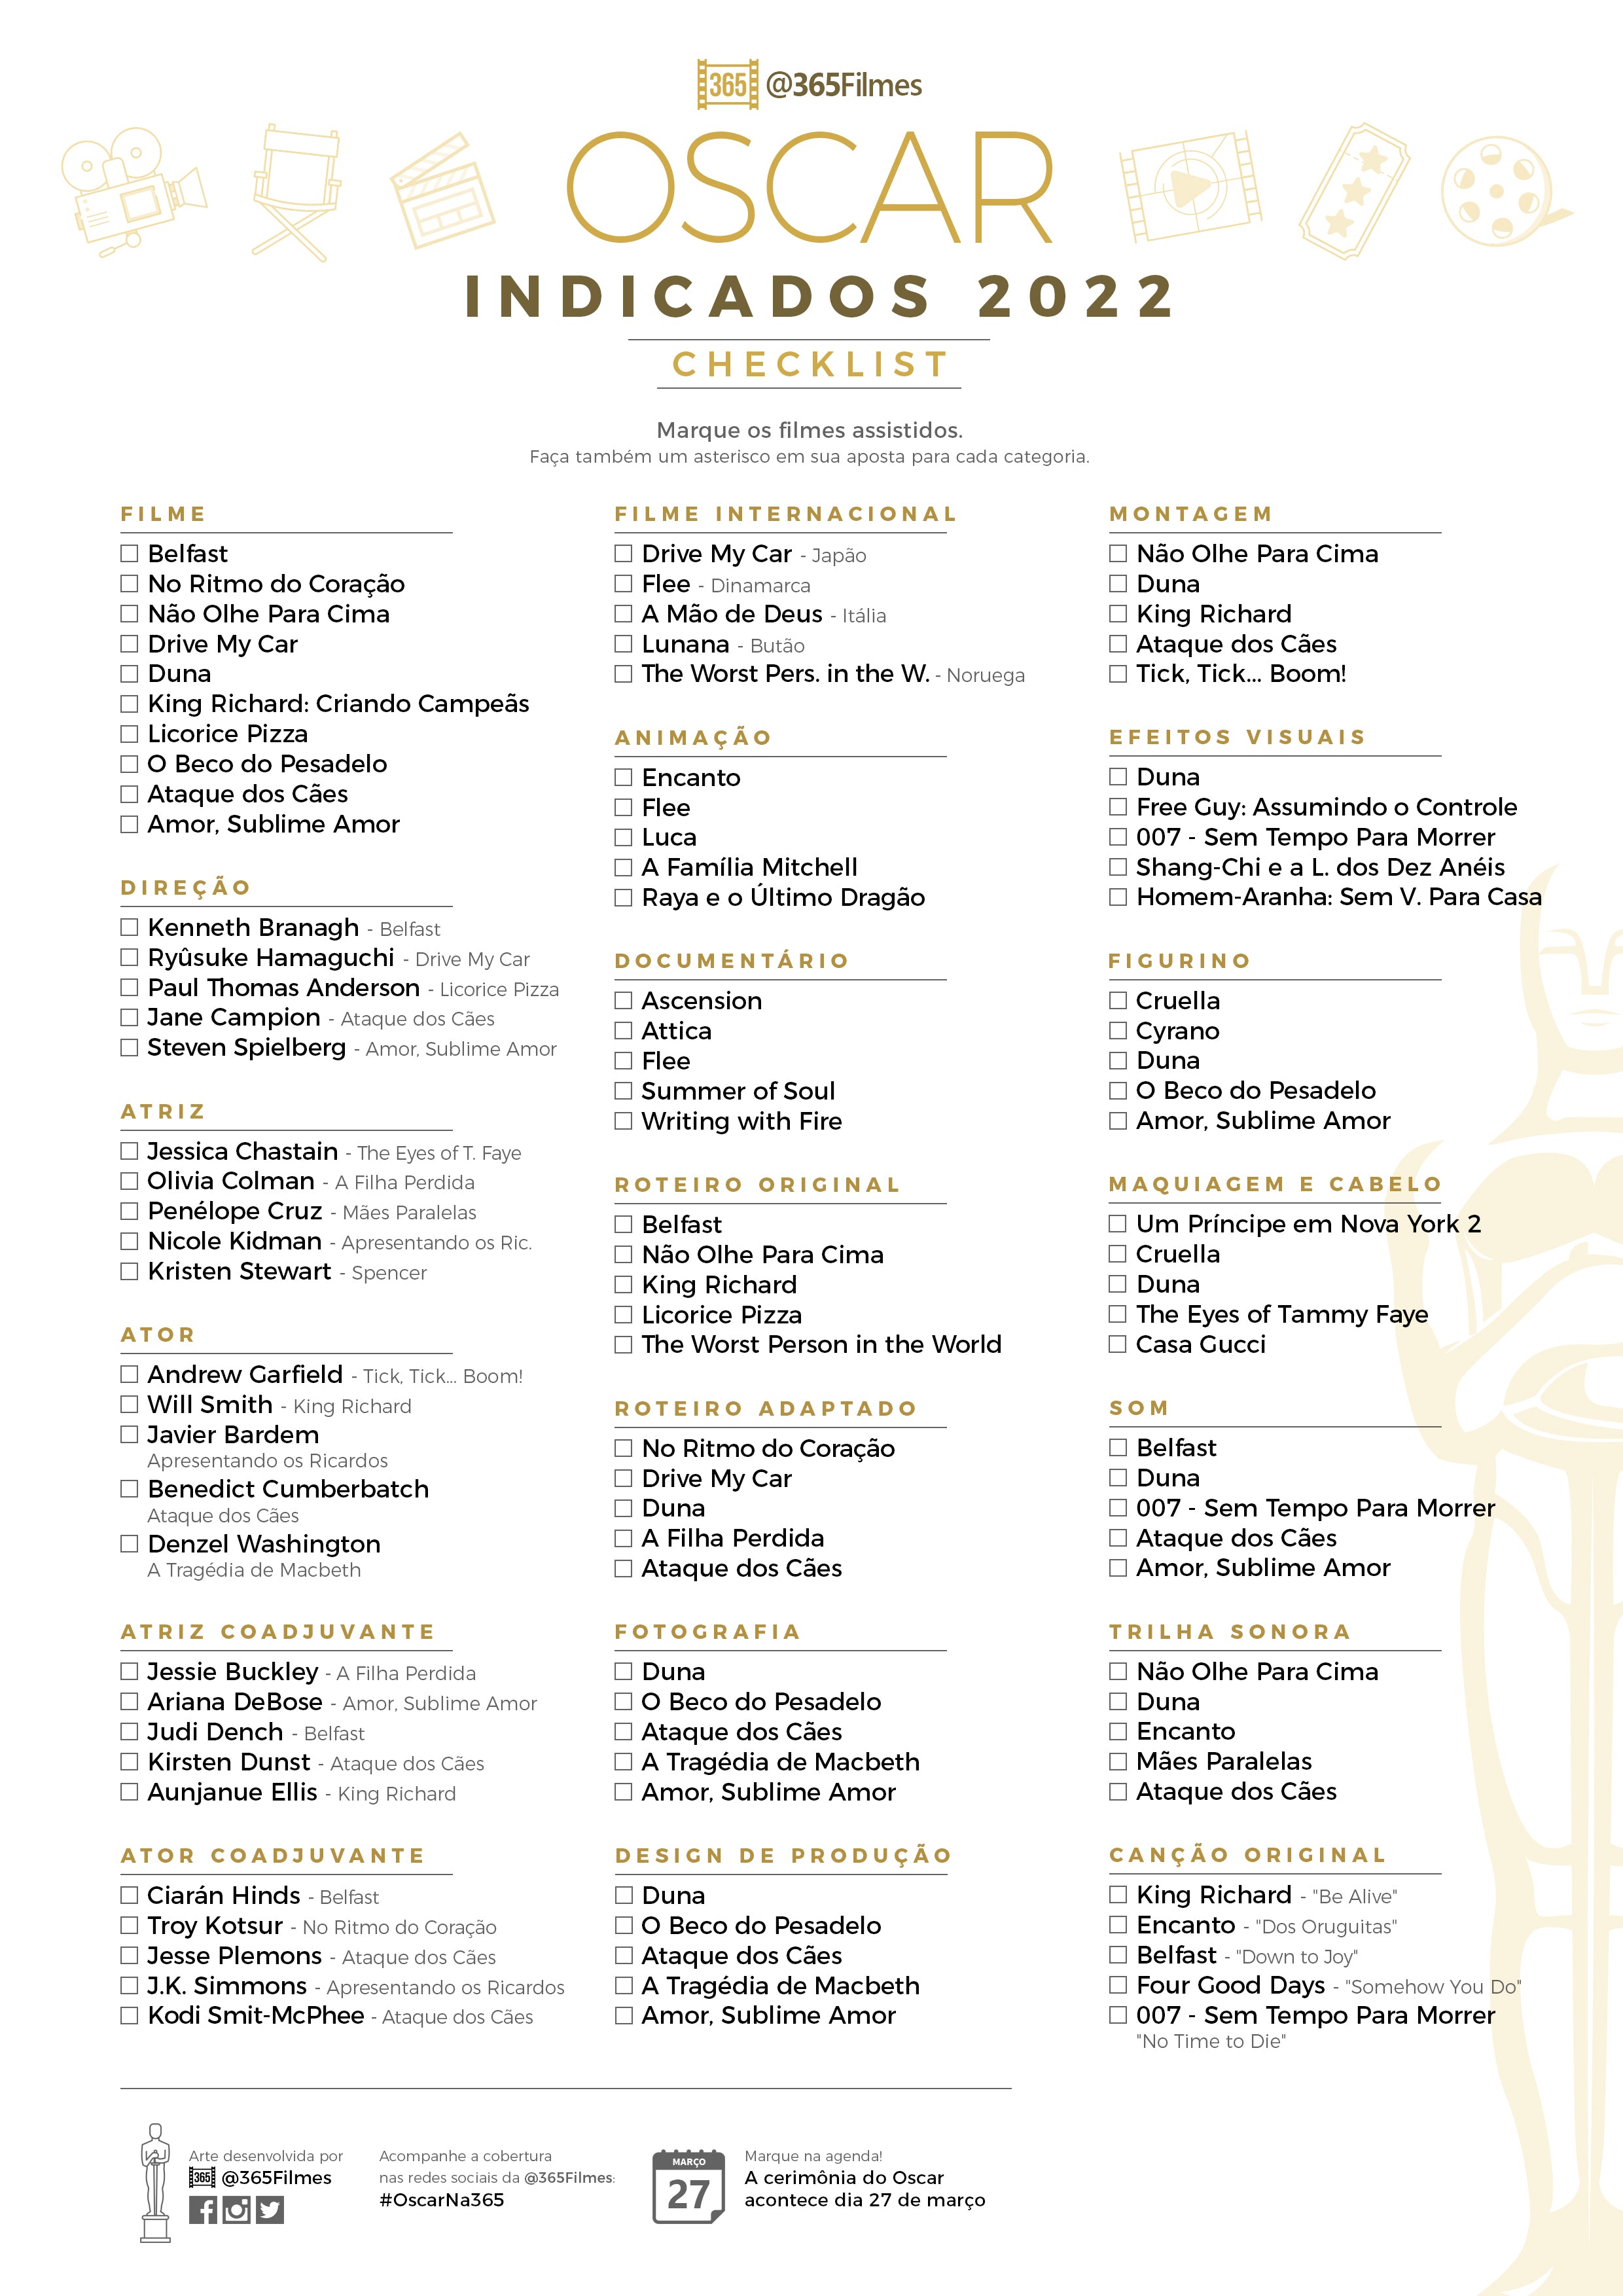 [Download] Checklist dos Indicados ao Oscar 2022 Baixe e imprima